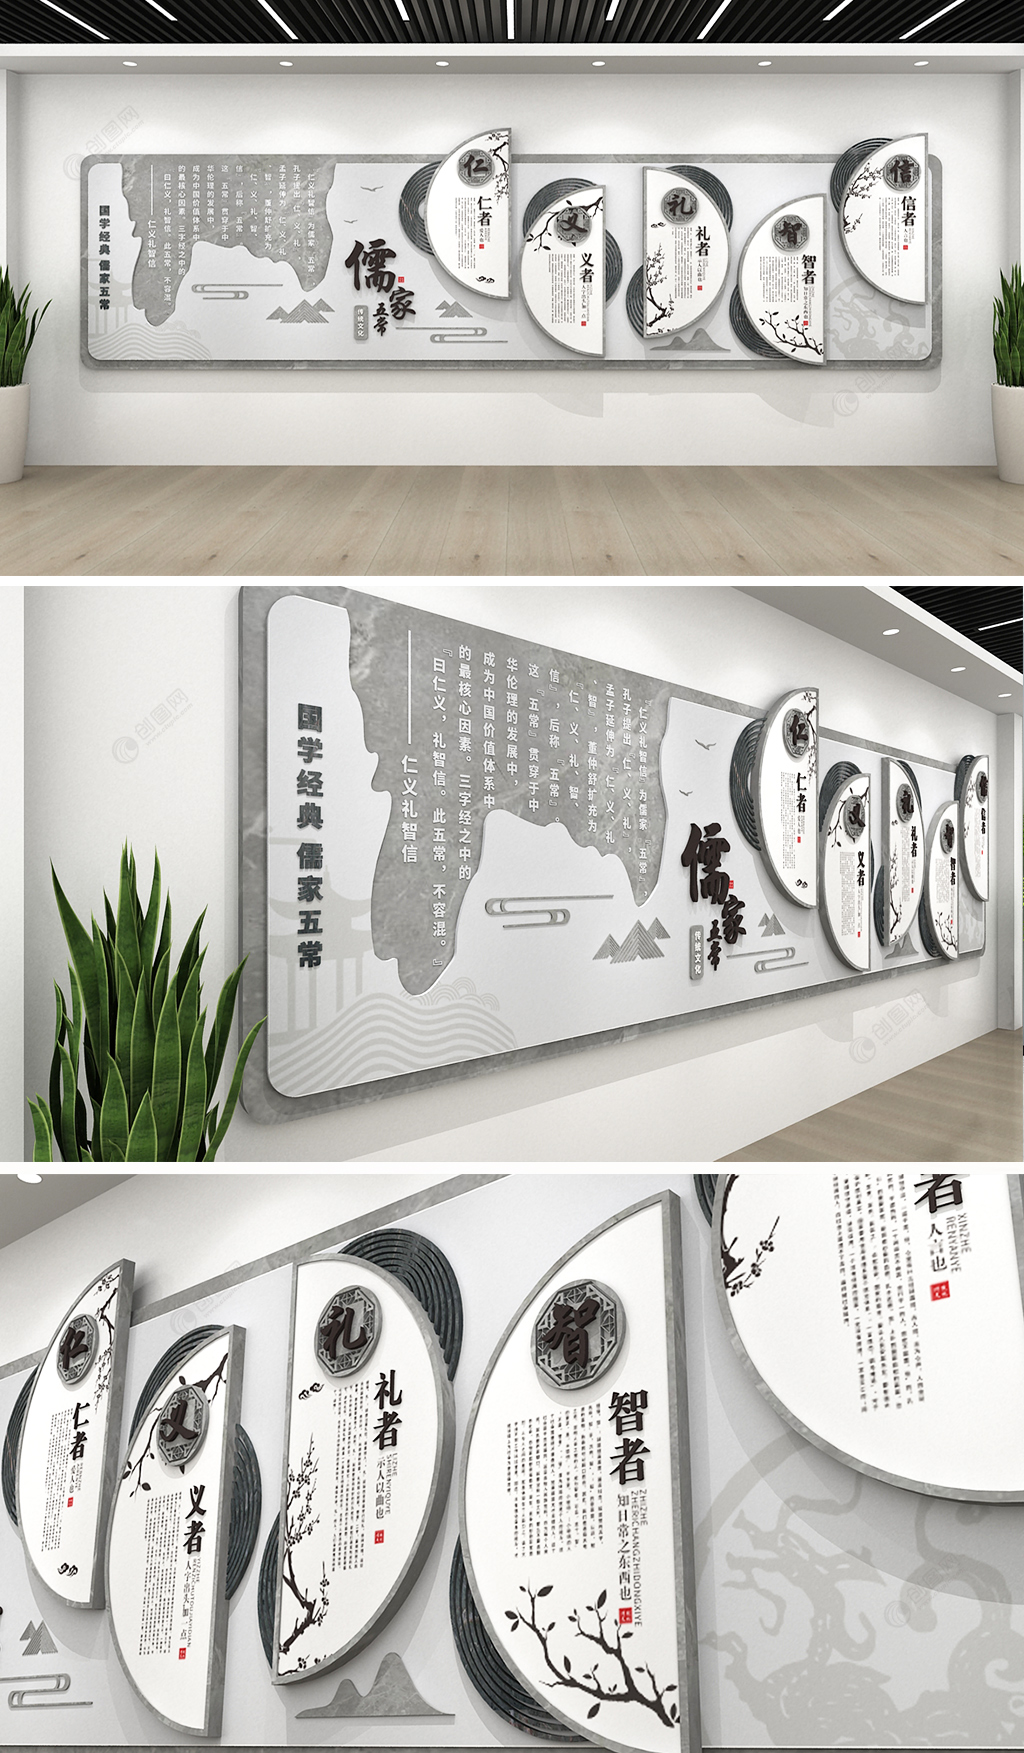 大理石纹班级教室中华传统儒家五常文化墙设计模板